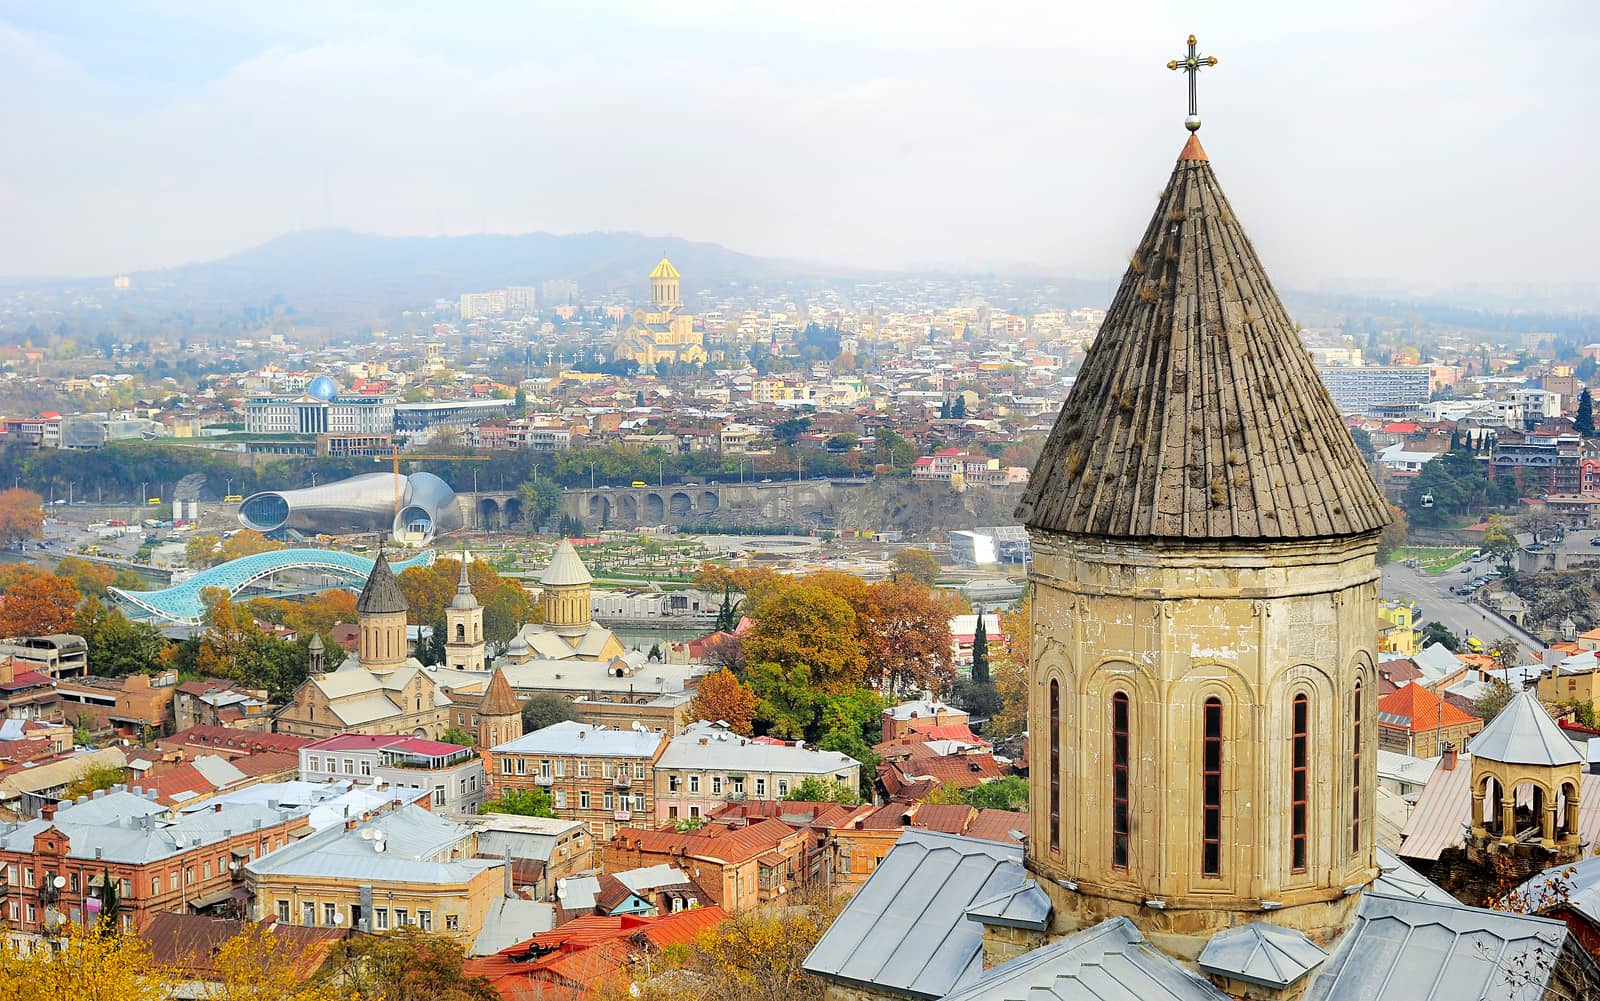 Tbilisi skyline by joyfull